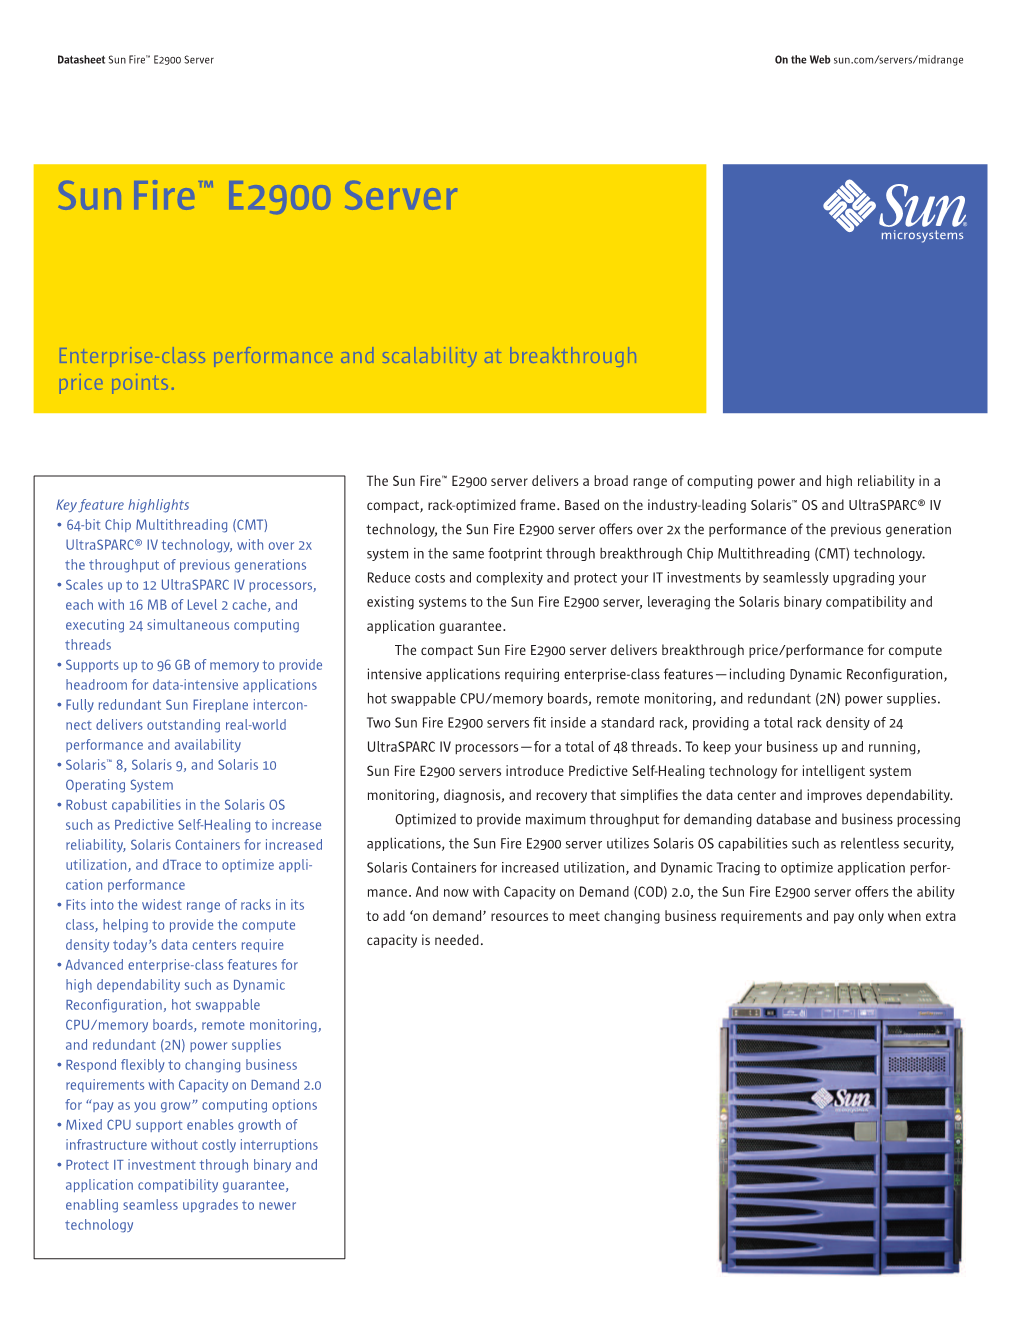 Sun Fire E2900 Server Datasheet